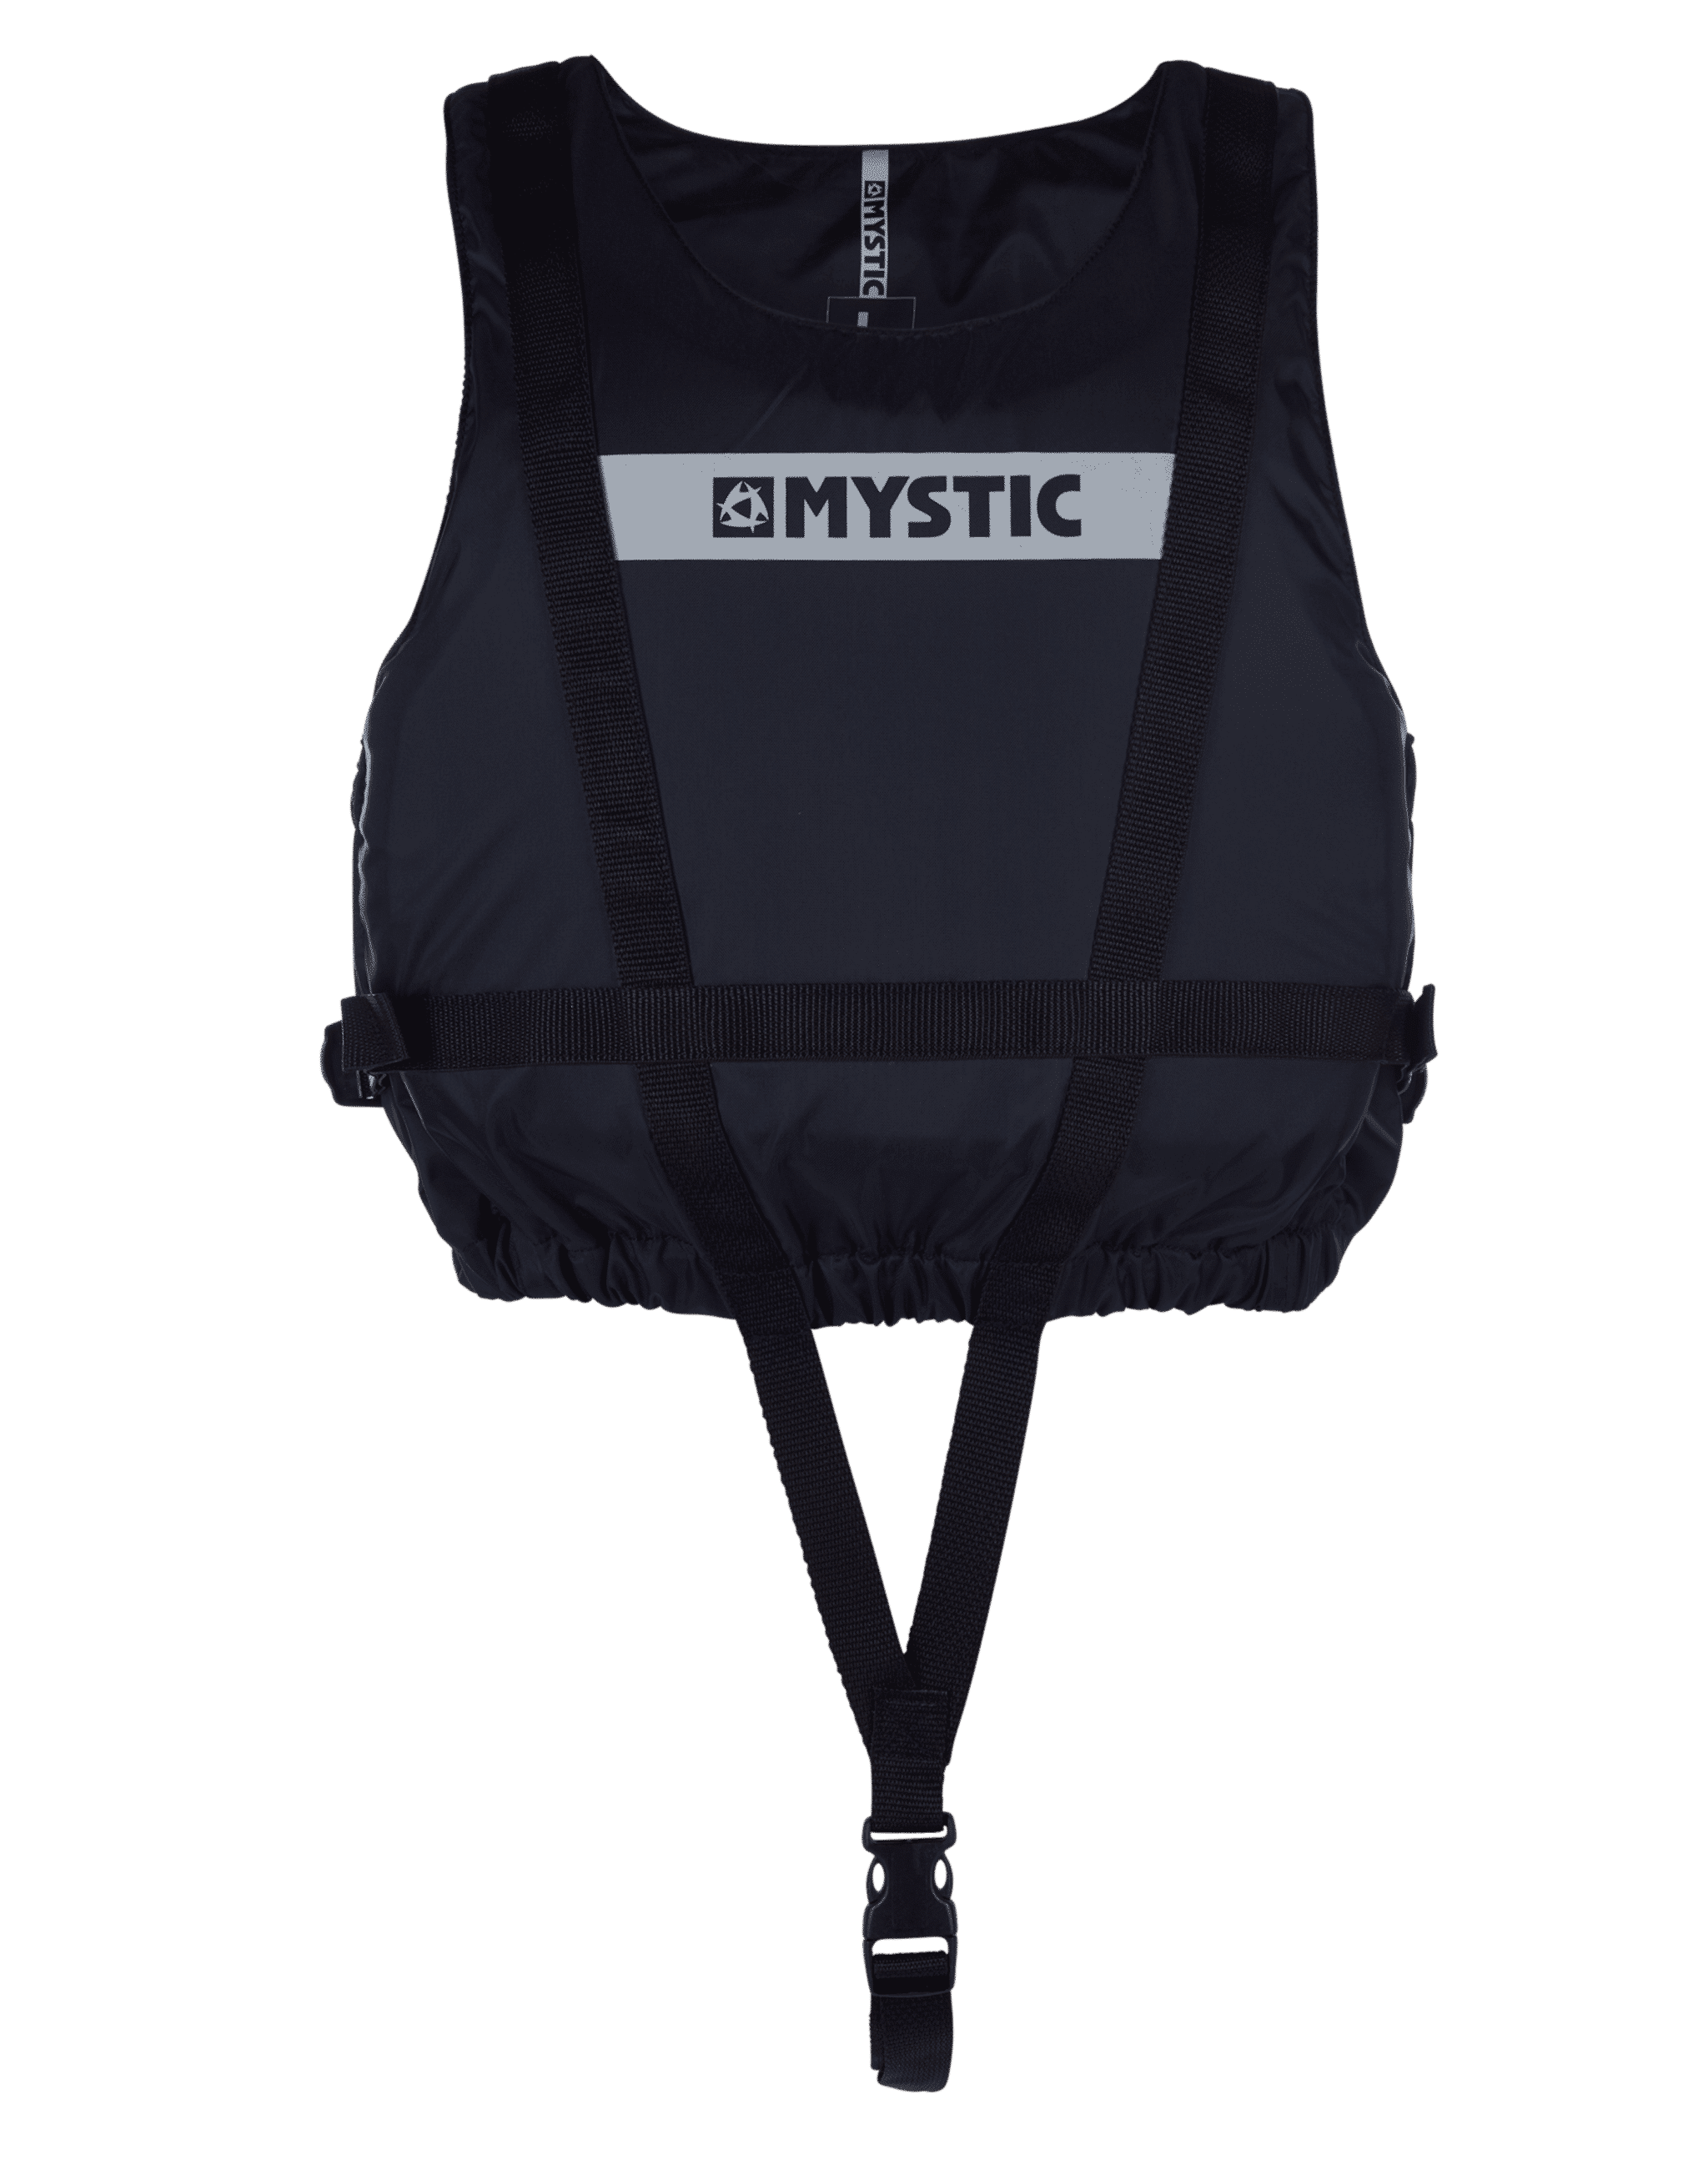 Mystic Brand Floataiton Vest Zip Free